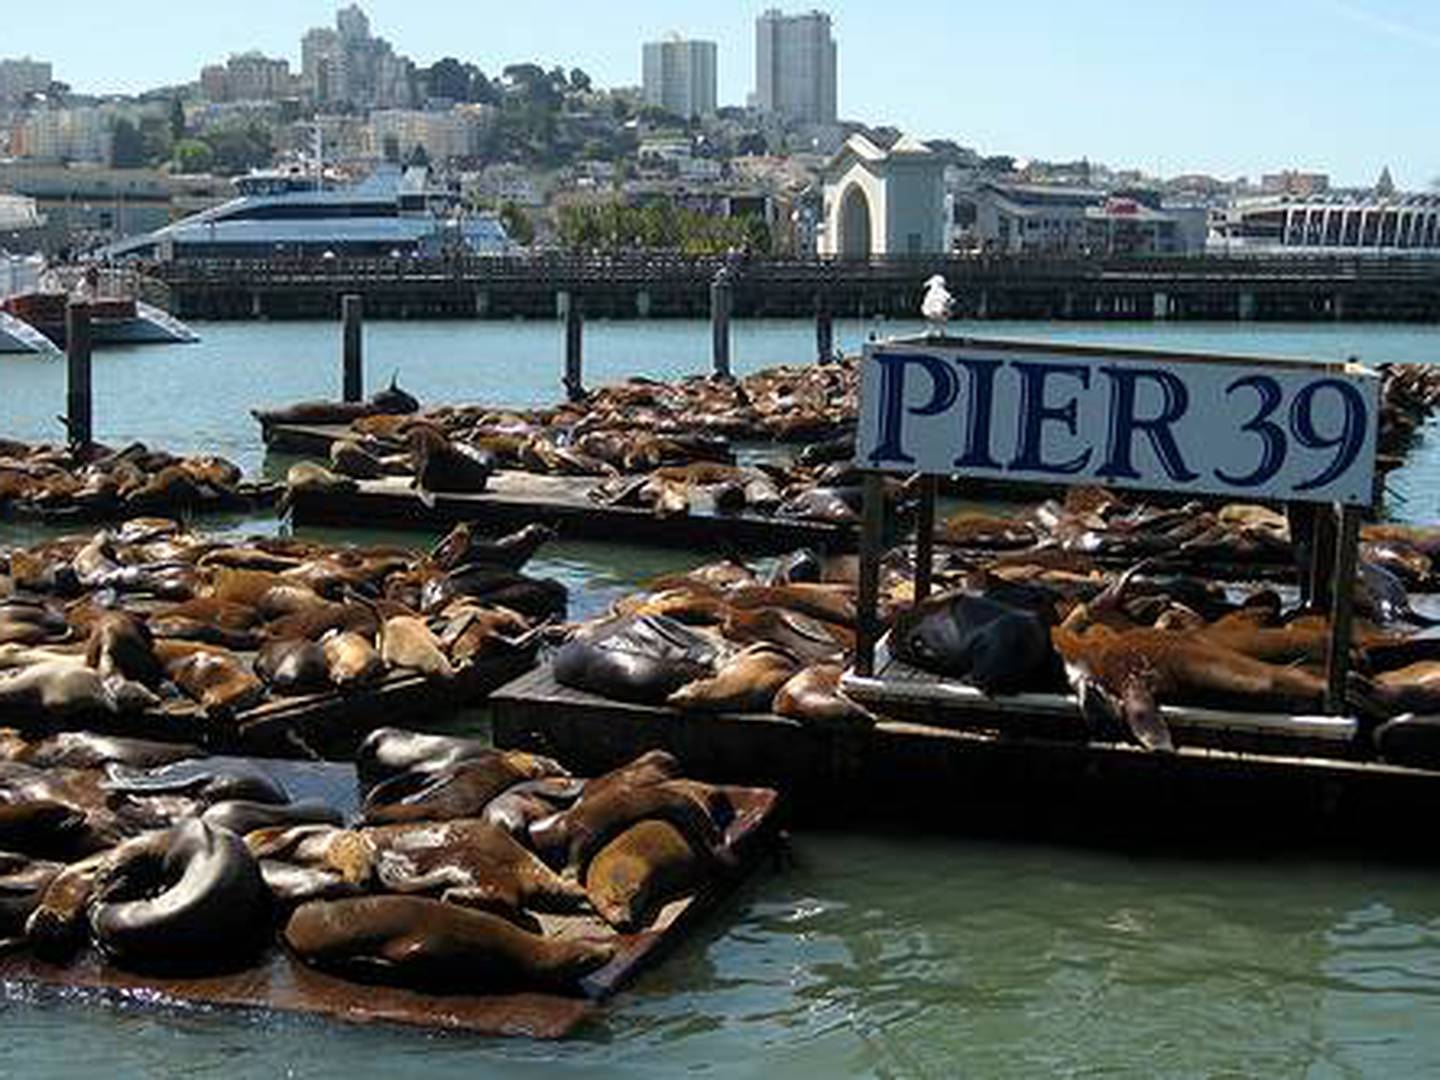 Aparecieron los leones marinos del Pier 39 en San Francisco - VeoVerde